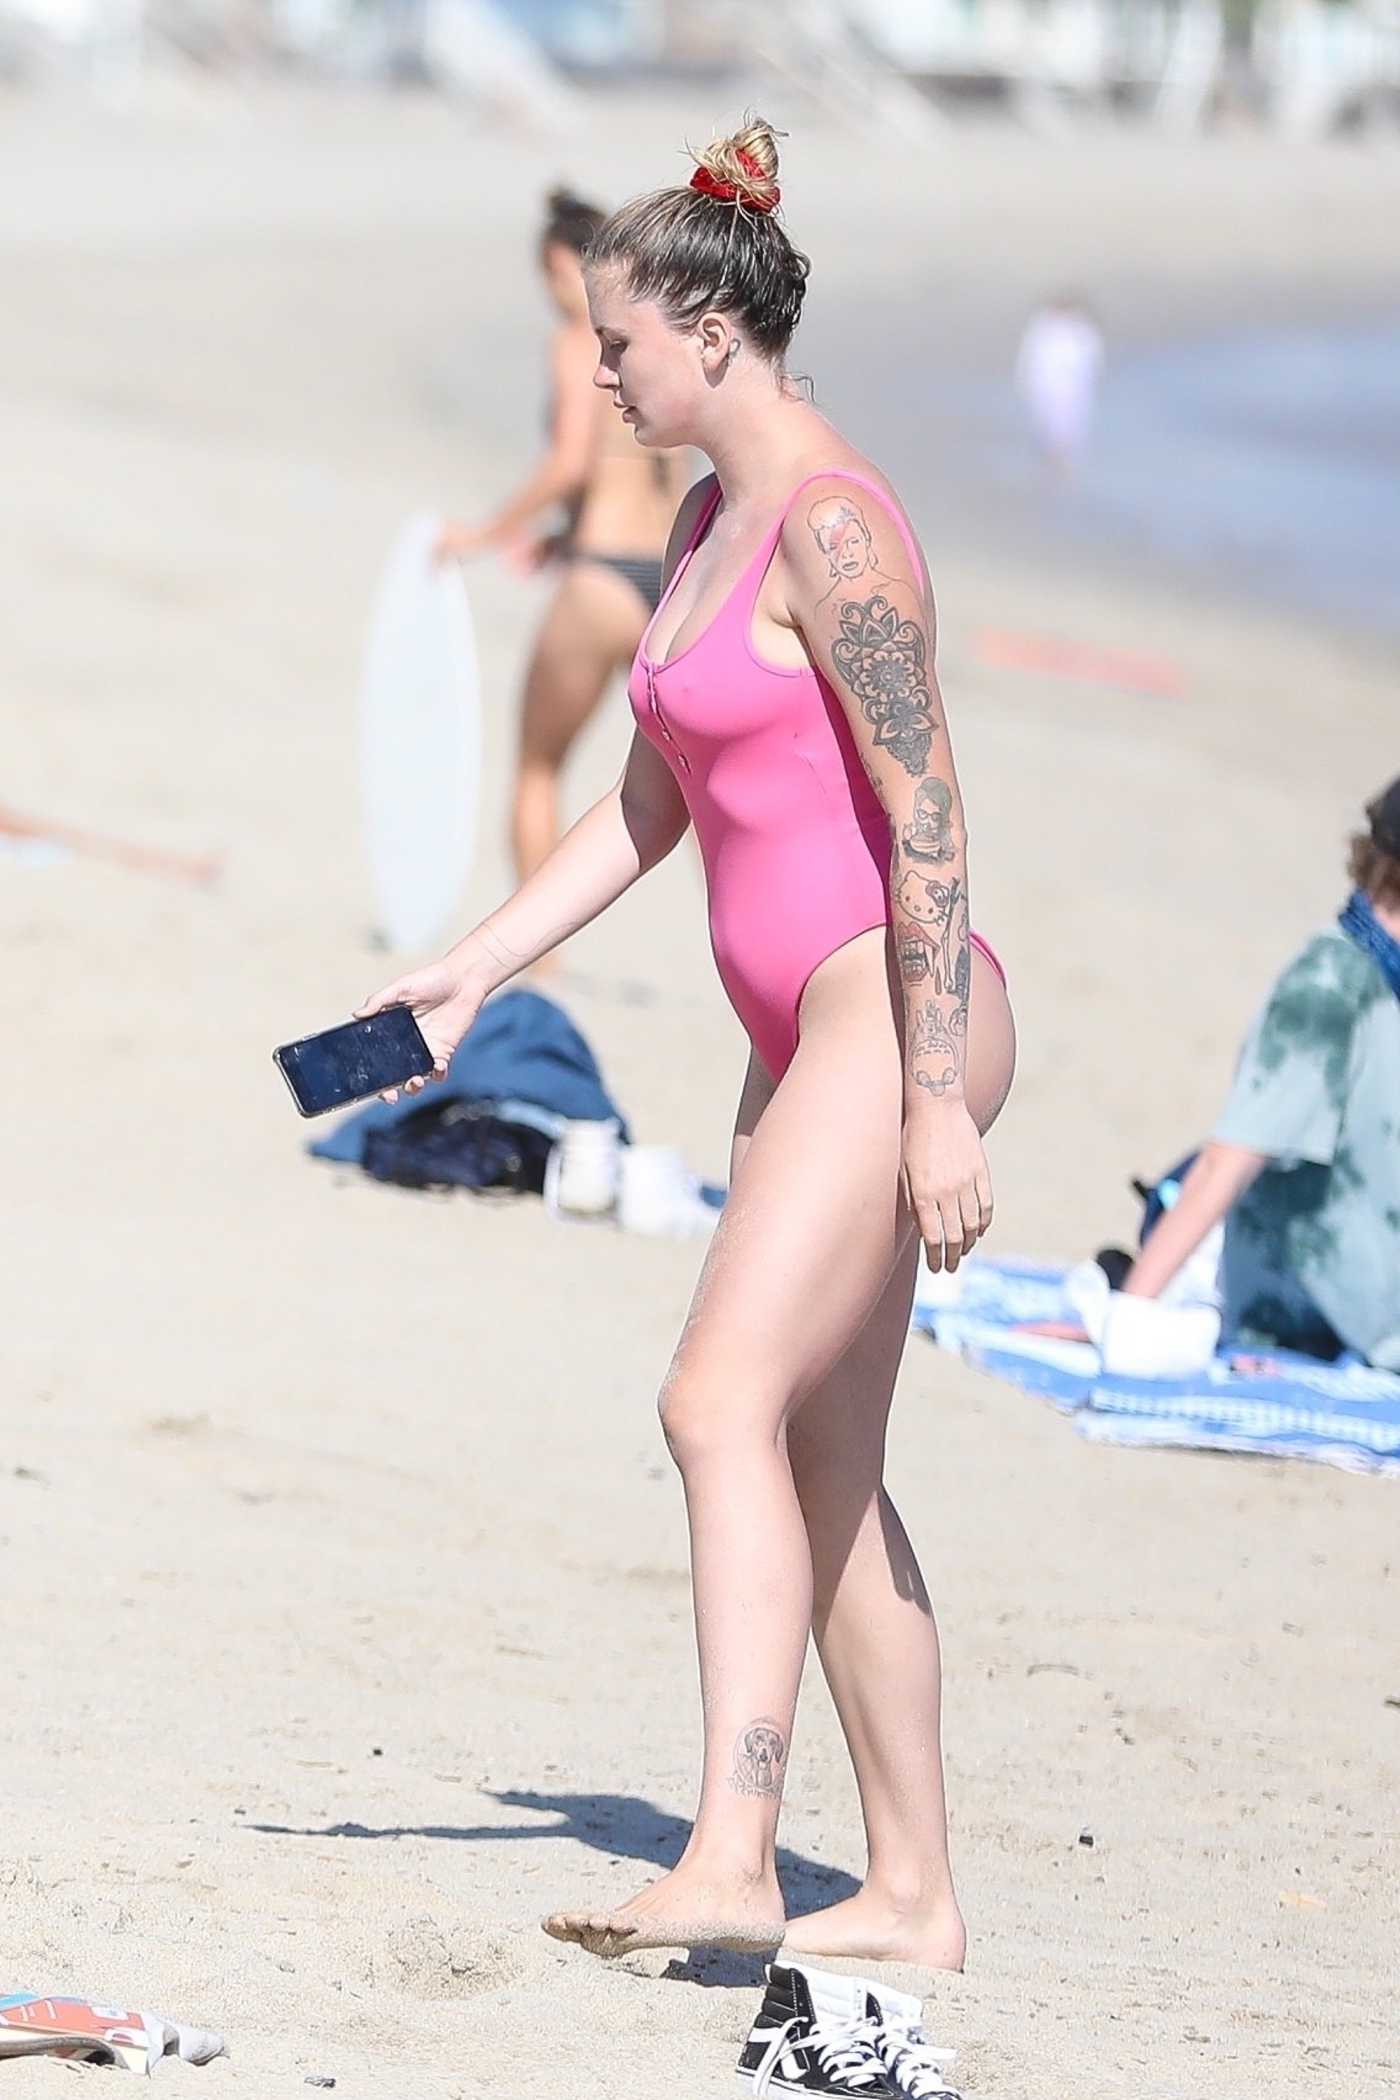 Ireland Baldwin in a Pink Swimsuit on the Beath in Malibu 08/30/2020